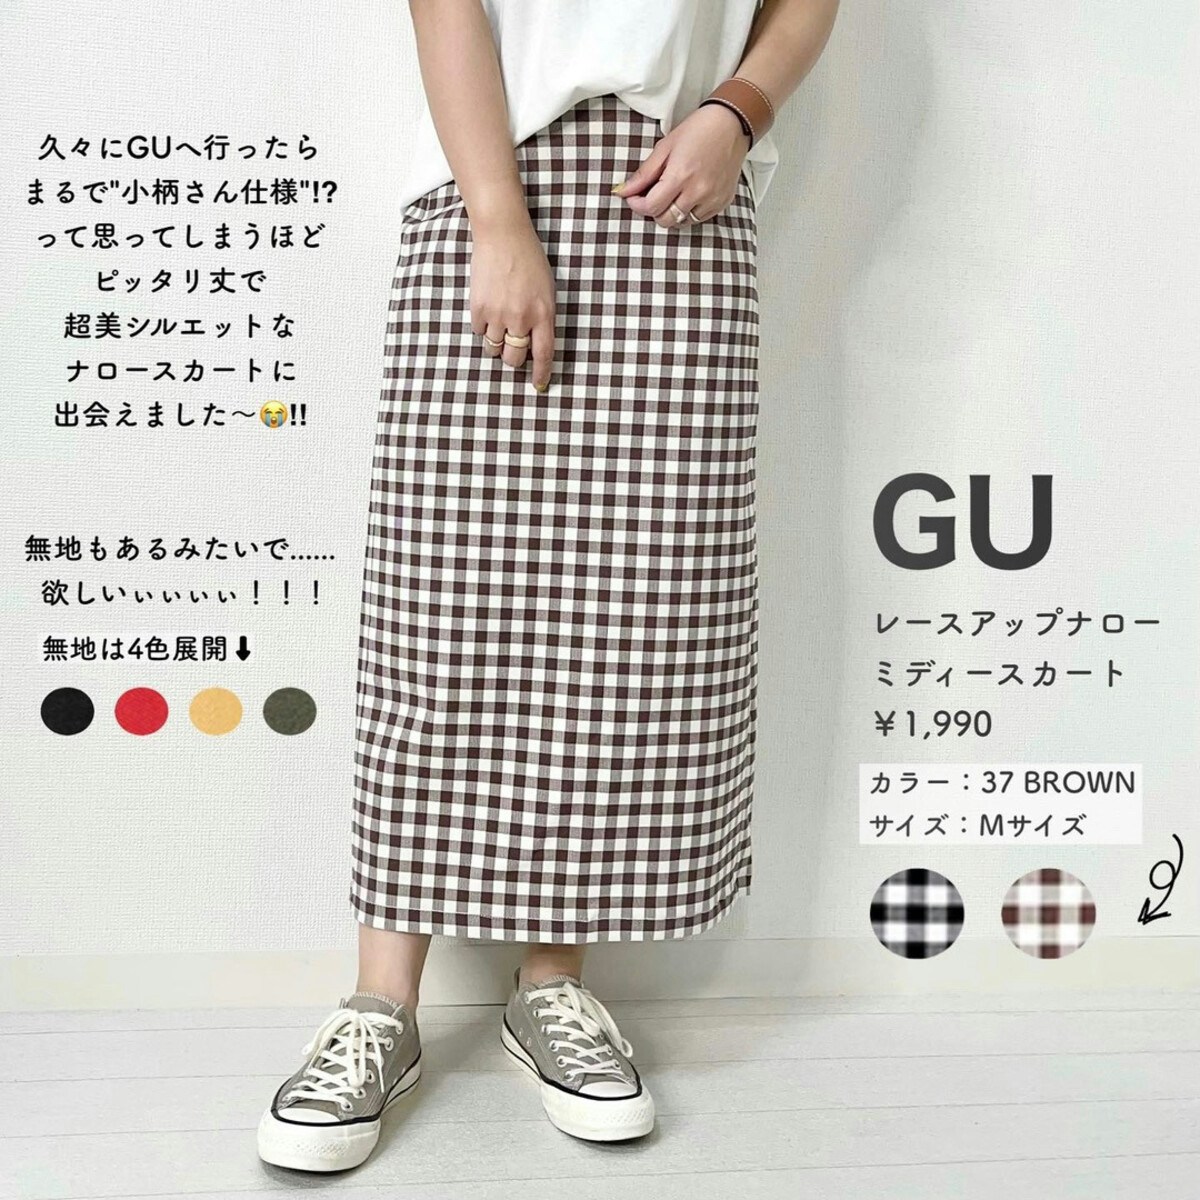 沖縄・離島除く全国届 GU レースアップナローミディスカート Mサイズ 新品 通販